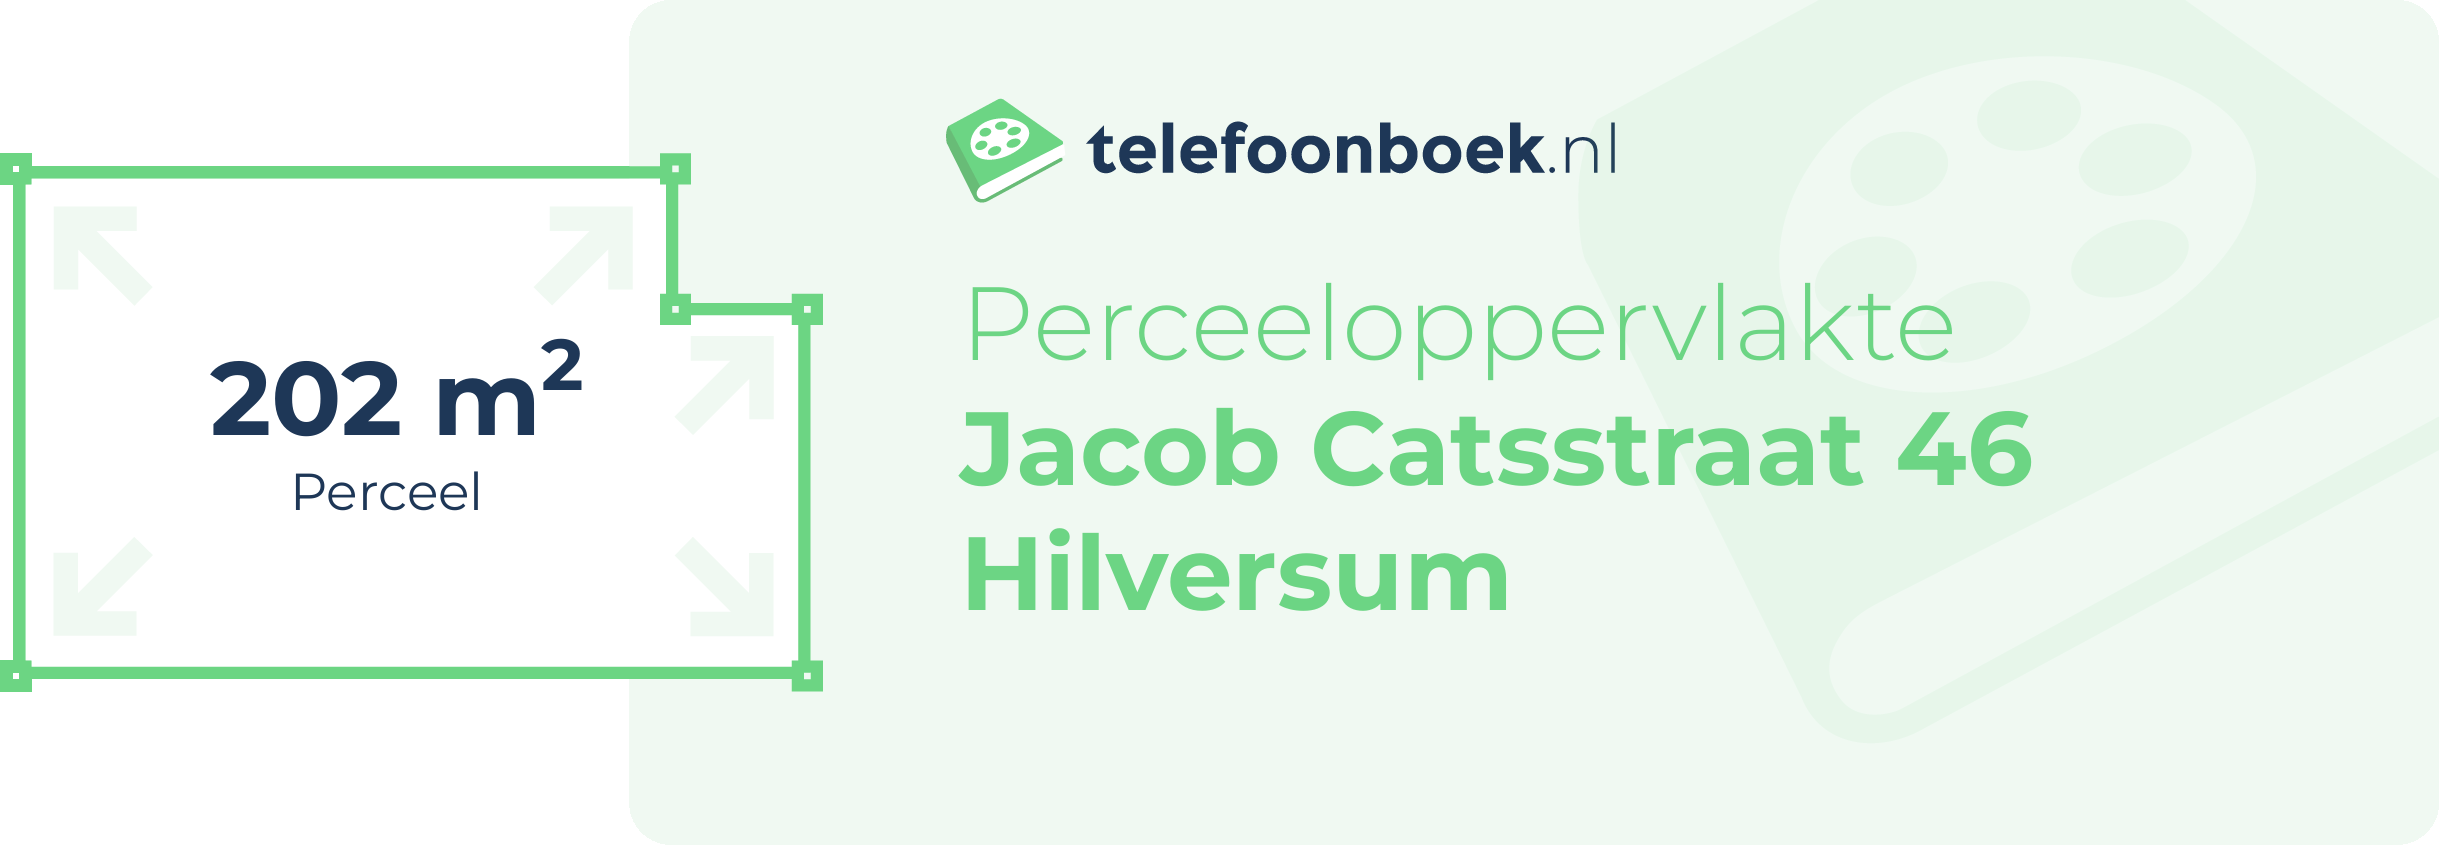 Perceeloppervlakte Jacob Catsstraat 46 Hilversum